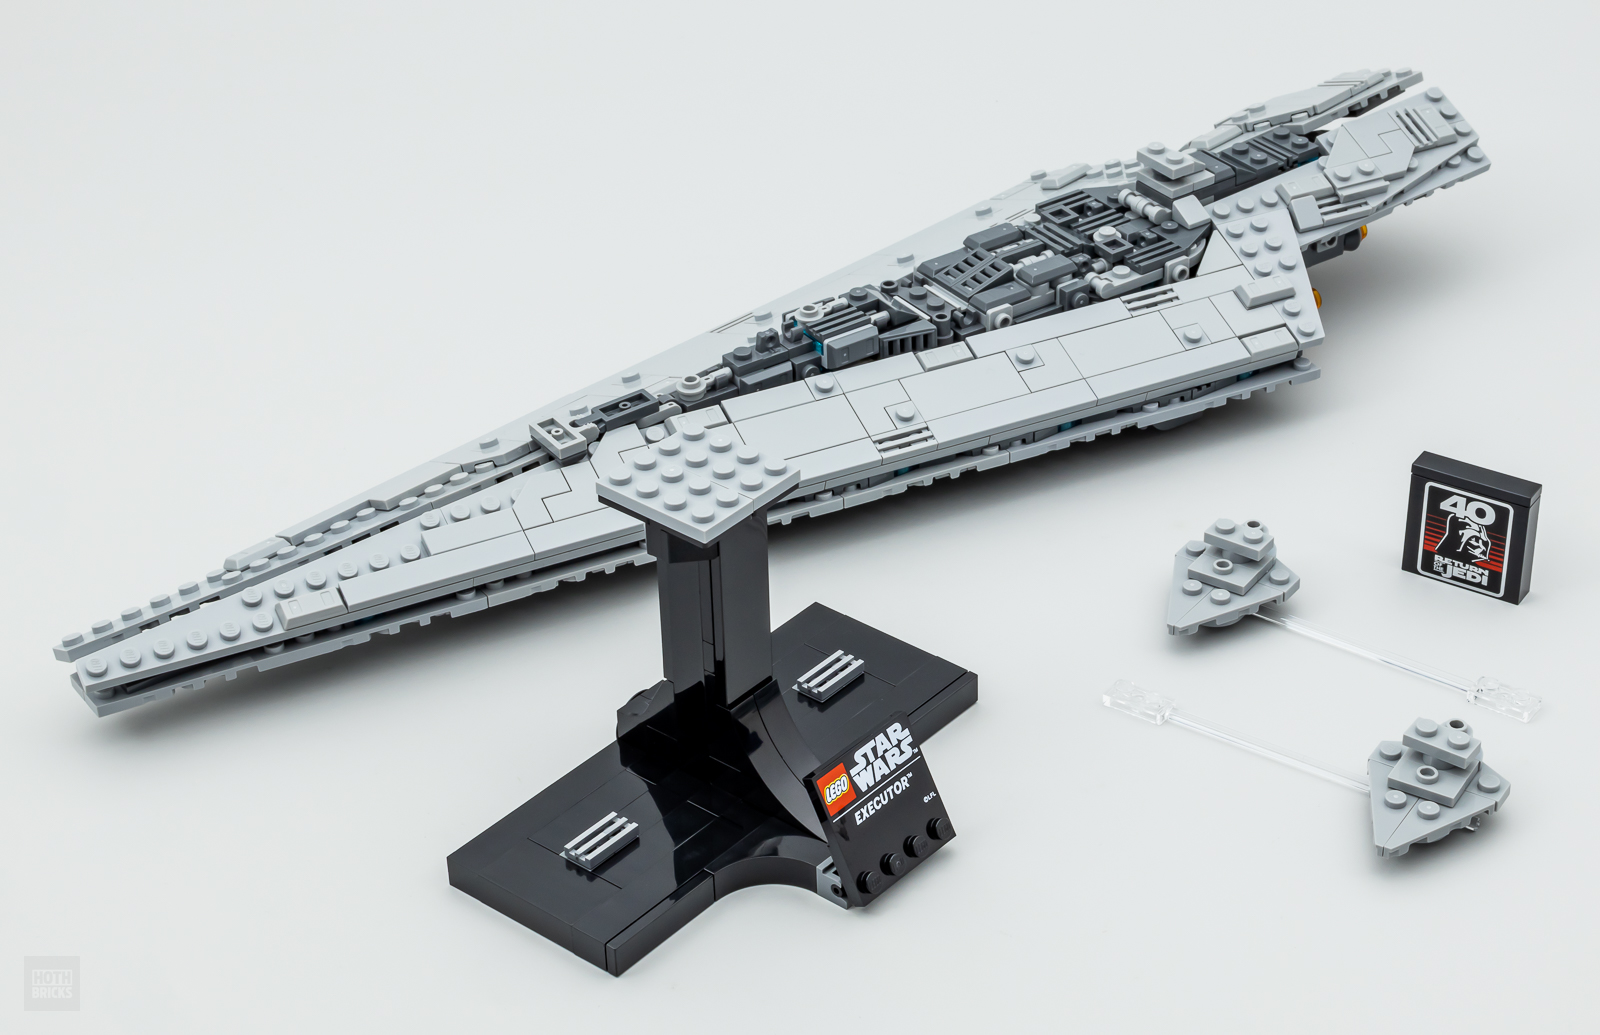 Star Wars : Ce Destroyer stellaire en LEGO est tout simplement Impérial